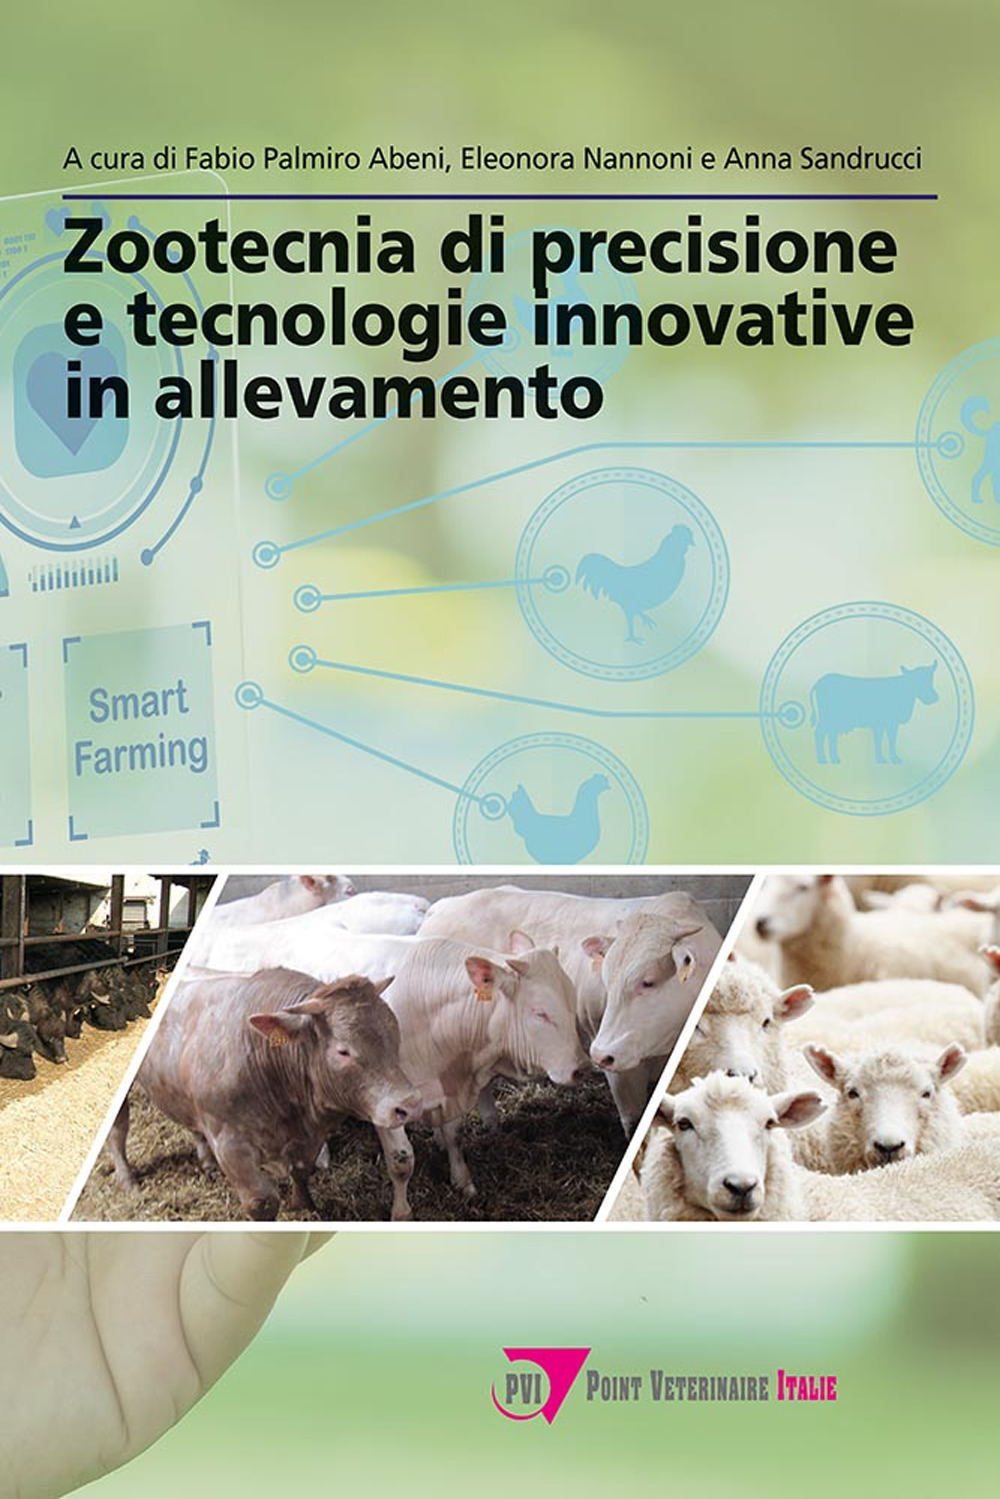 Zootecnia di precisione e tecnologie innovative in allevamento